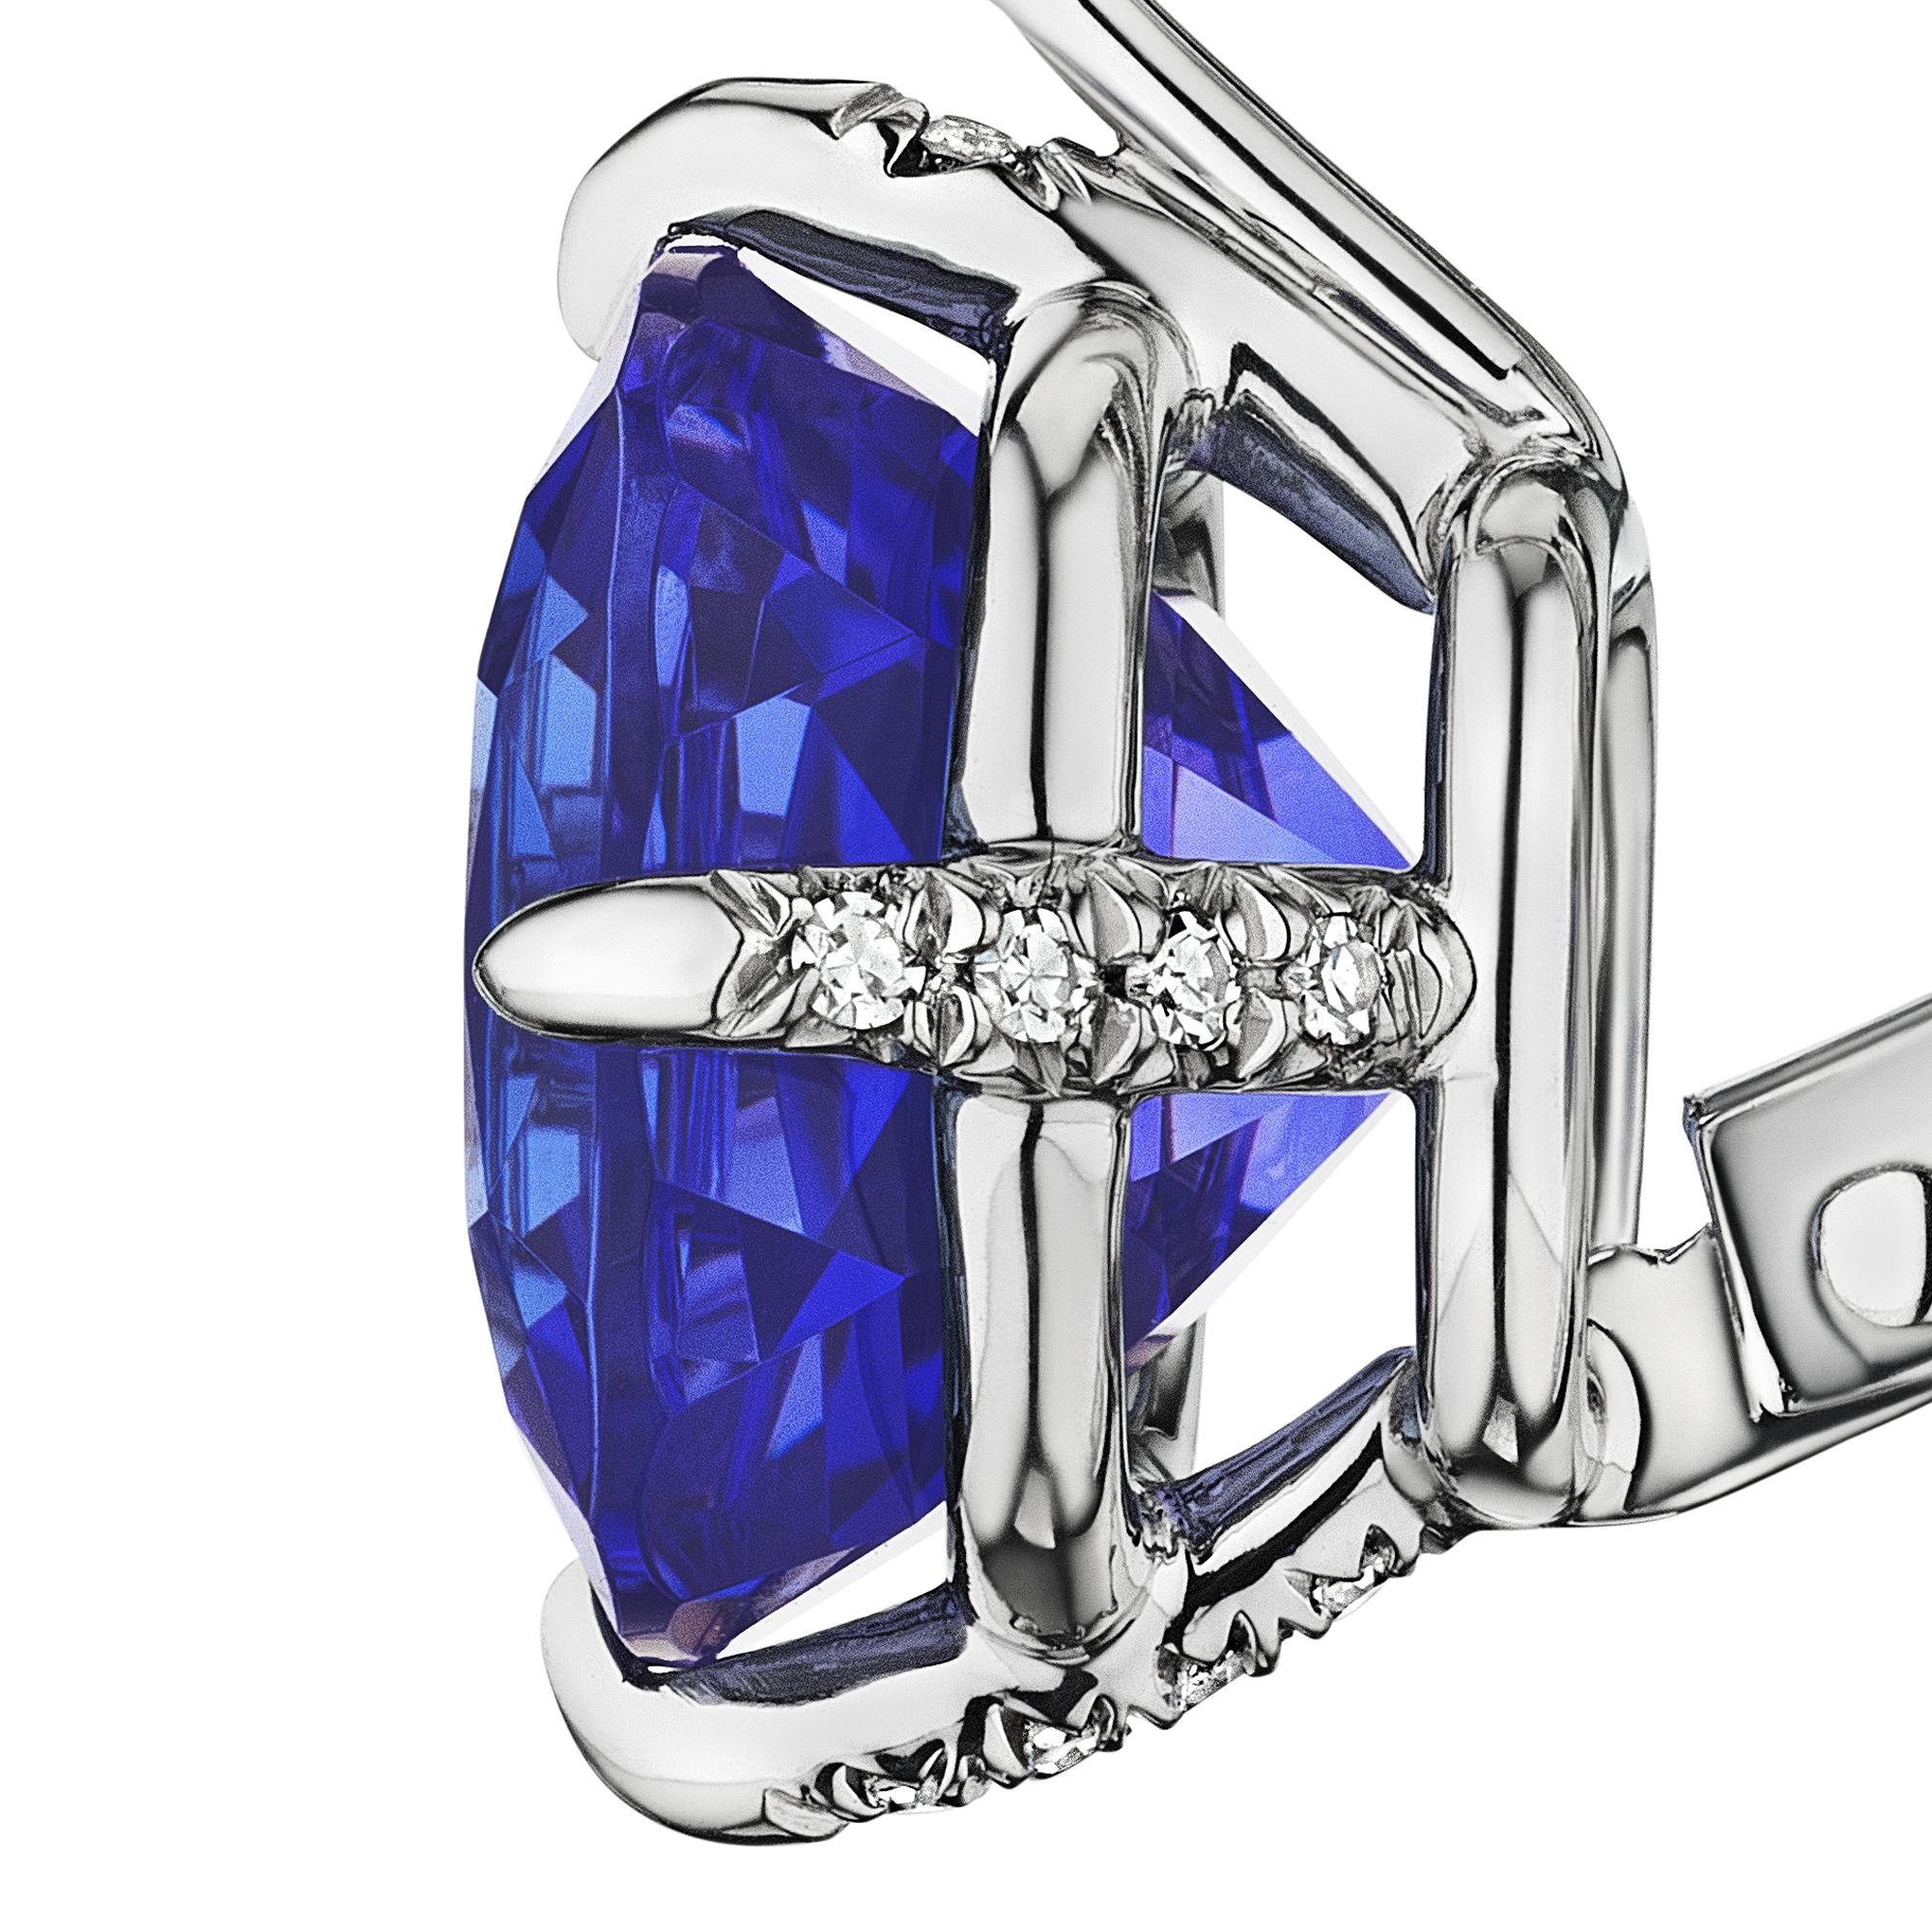 Romantisch und verträumt wie ein samtblauer Sternenhimmel sind diese 11,25 Karat Tansanit-Ohrringe im Kissenschliff.  Montiert in Platin mit Diamantakzenten und mit Hebelrückseite.  Entworfen von Steven Fox Jewelry.  Gewicht des Diamanten 0,08